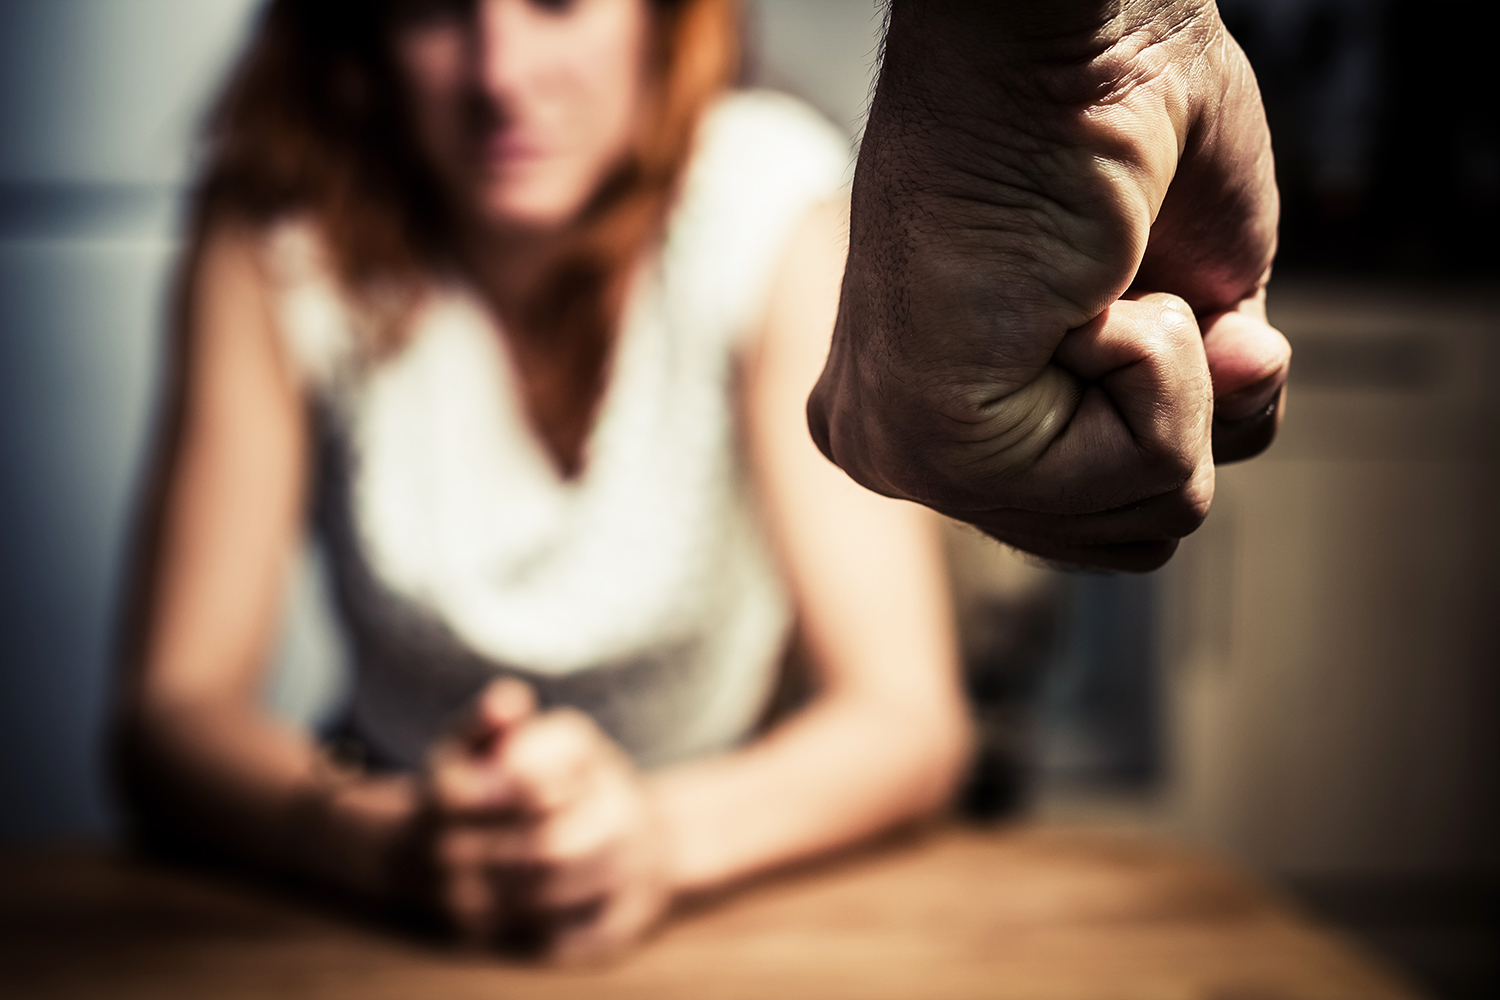 Violência doméstica contra mulher aumenta durante a quarentena, diz estudo